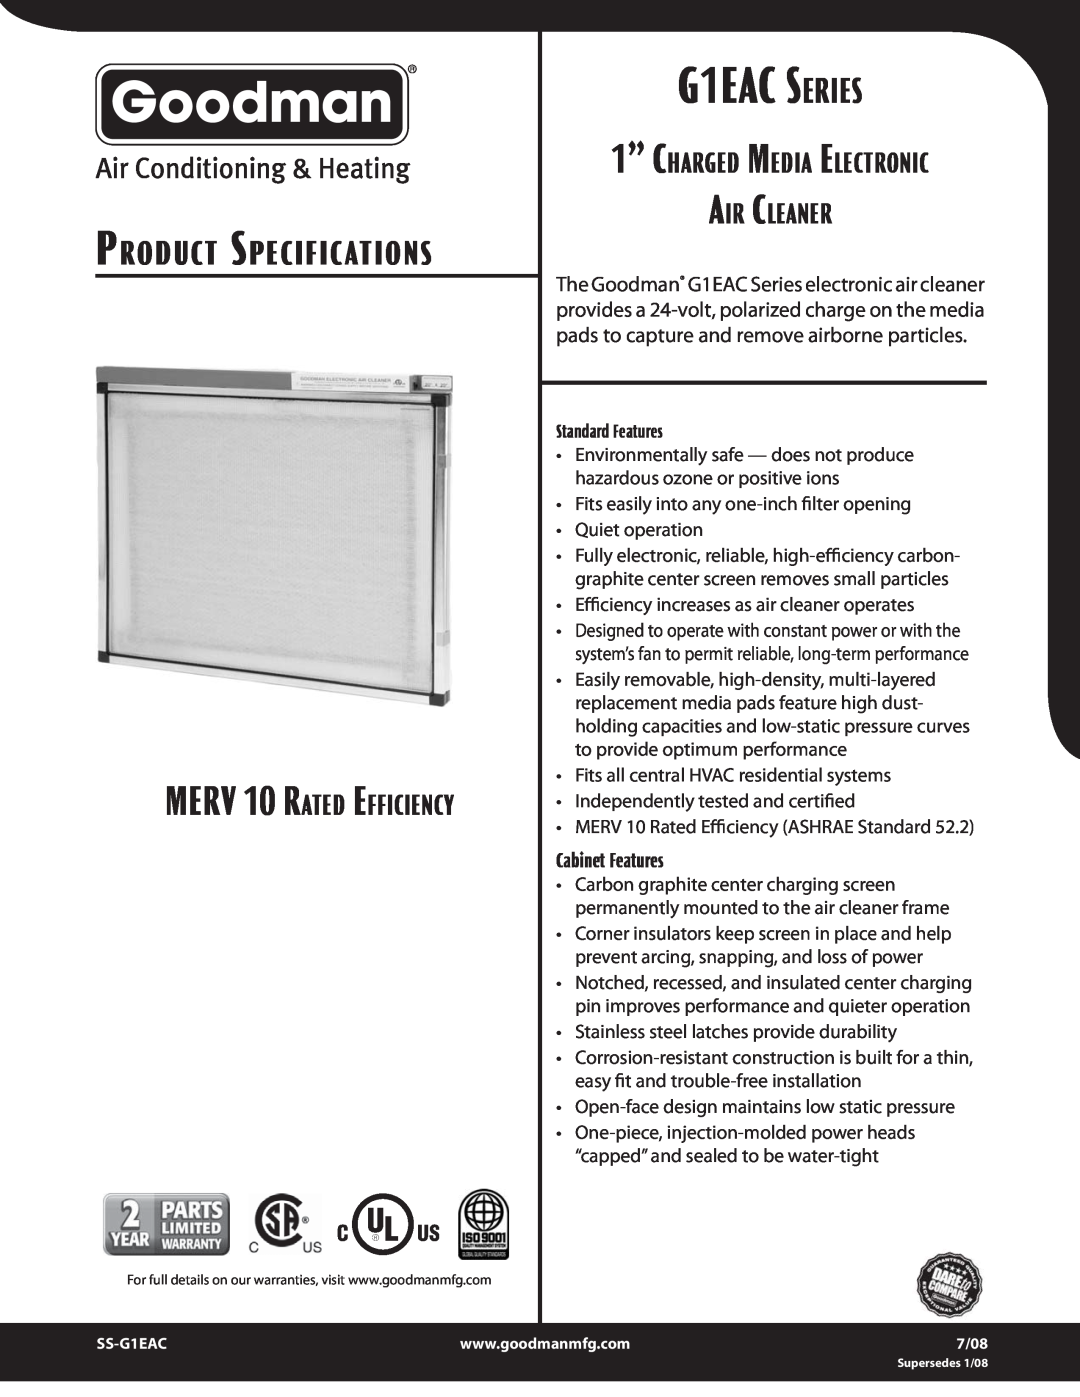 Goodman Mfg G1EAC Series specifications MERV 10 RATED EFFICIENCY, G1EAC SERIES, Product Specifications, Air Cleaner 